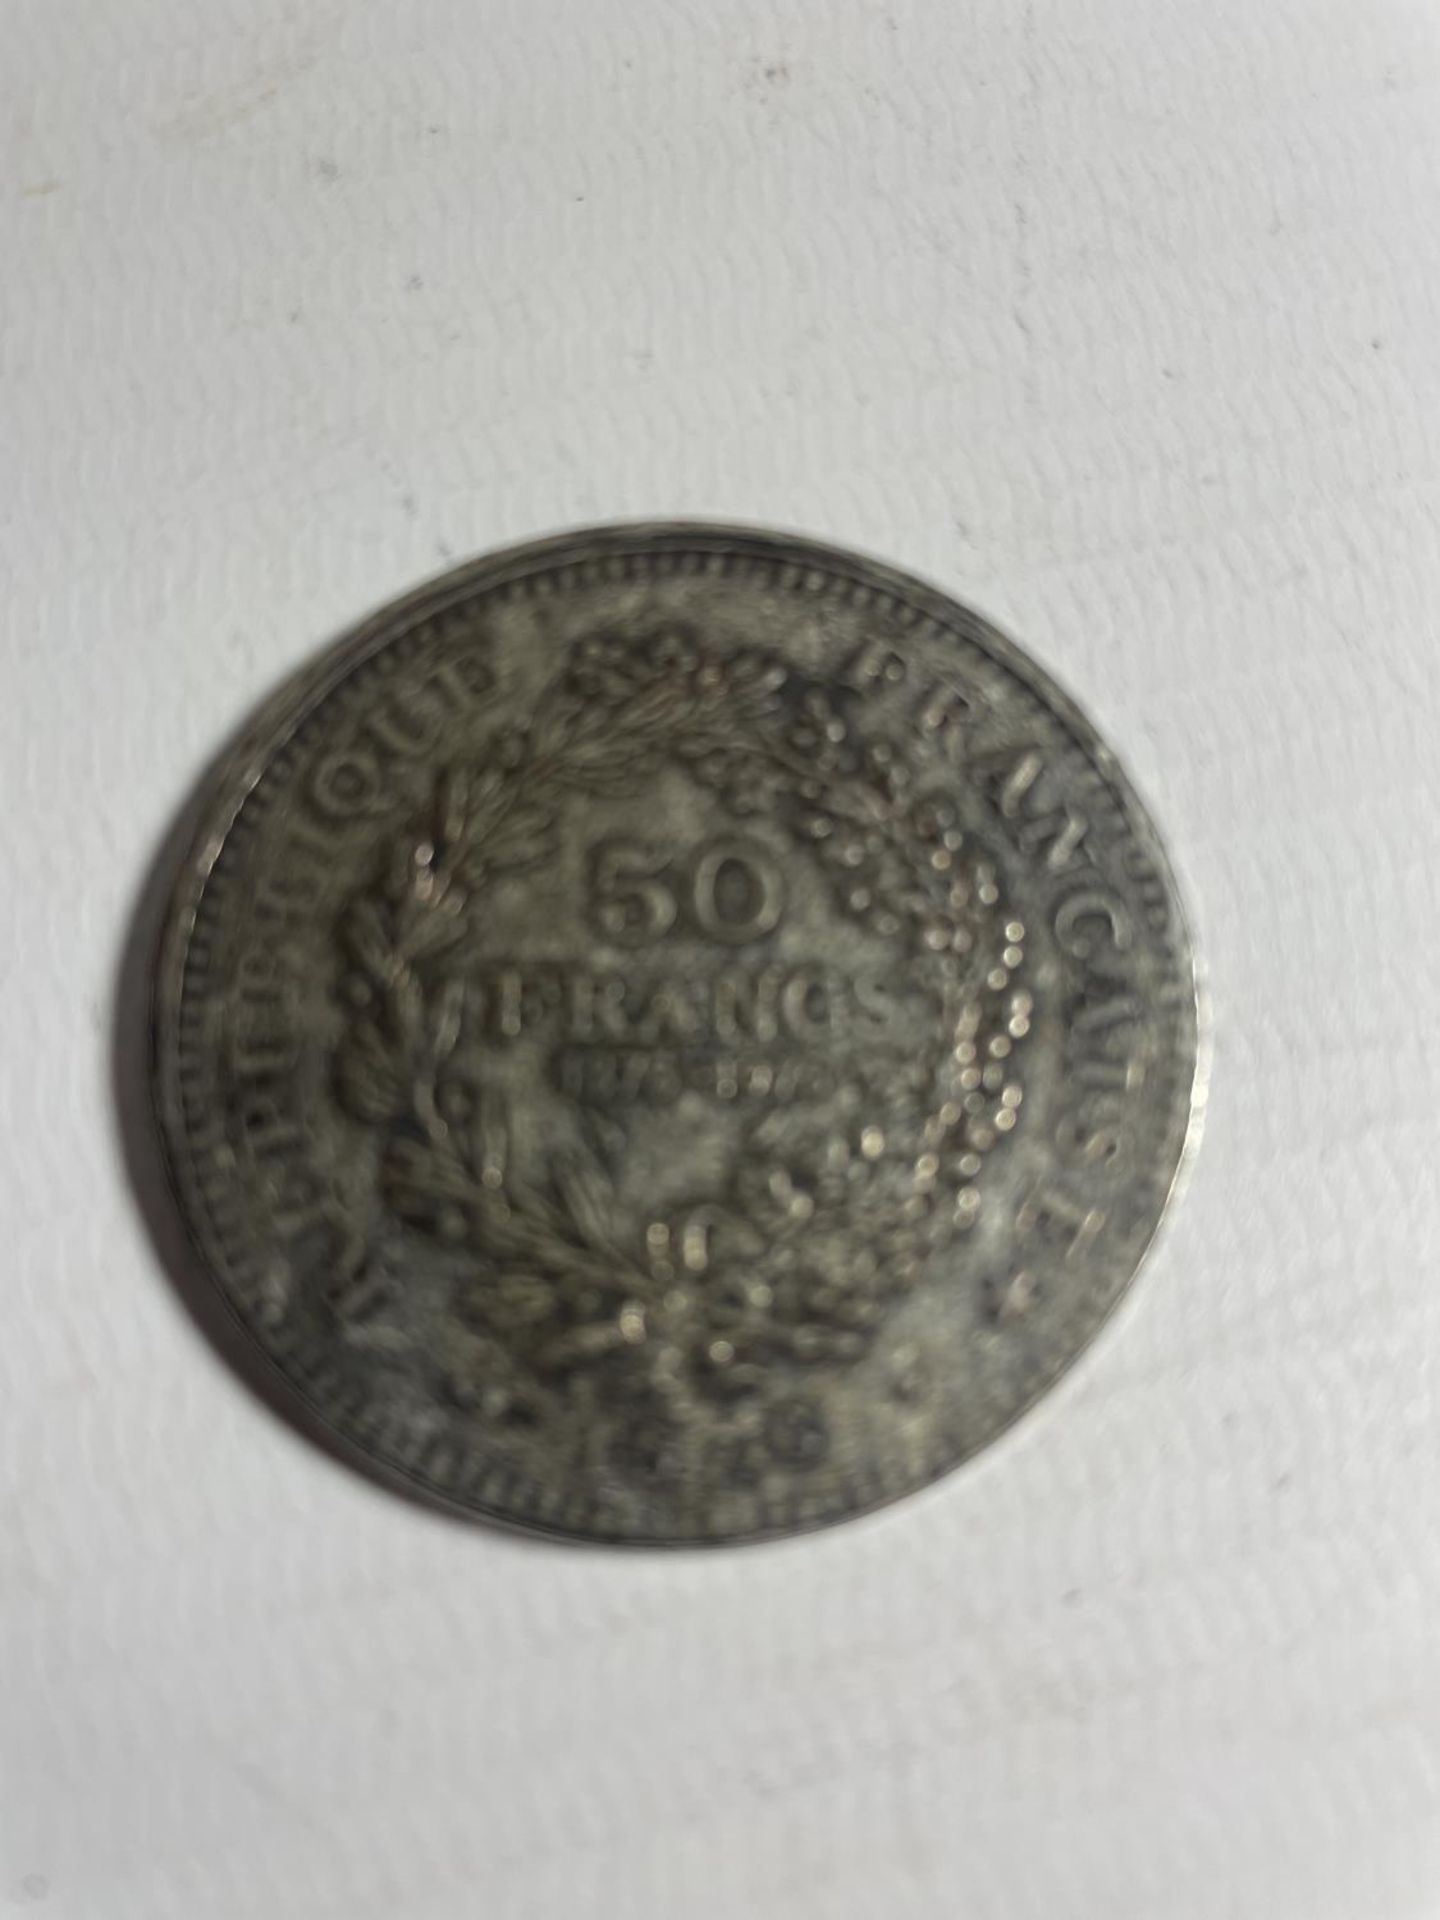 FRANCE , 1876 50 FRANC SILVER COIN - Bild 3 aus 3